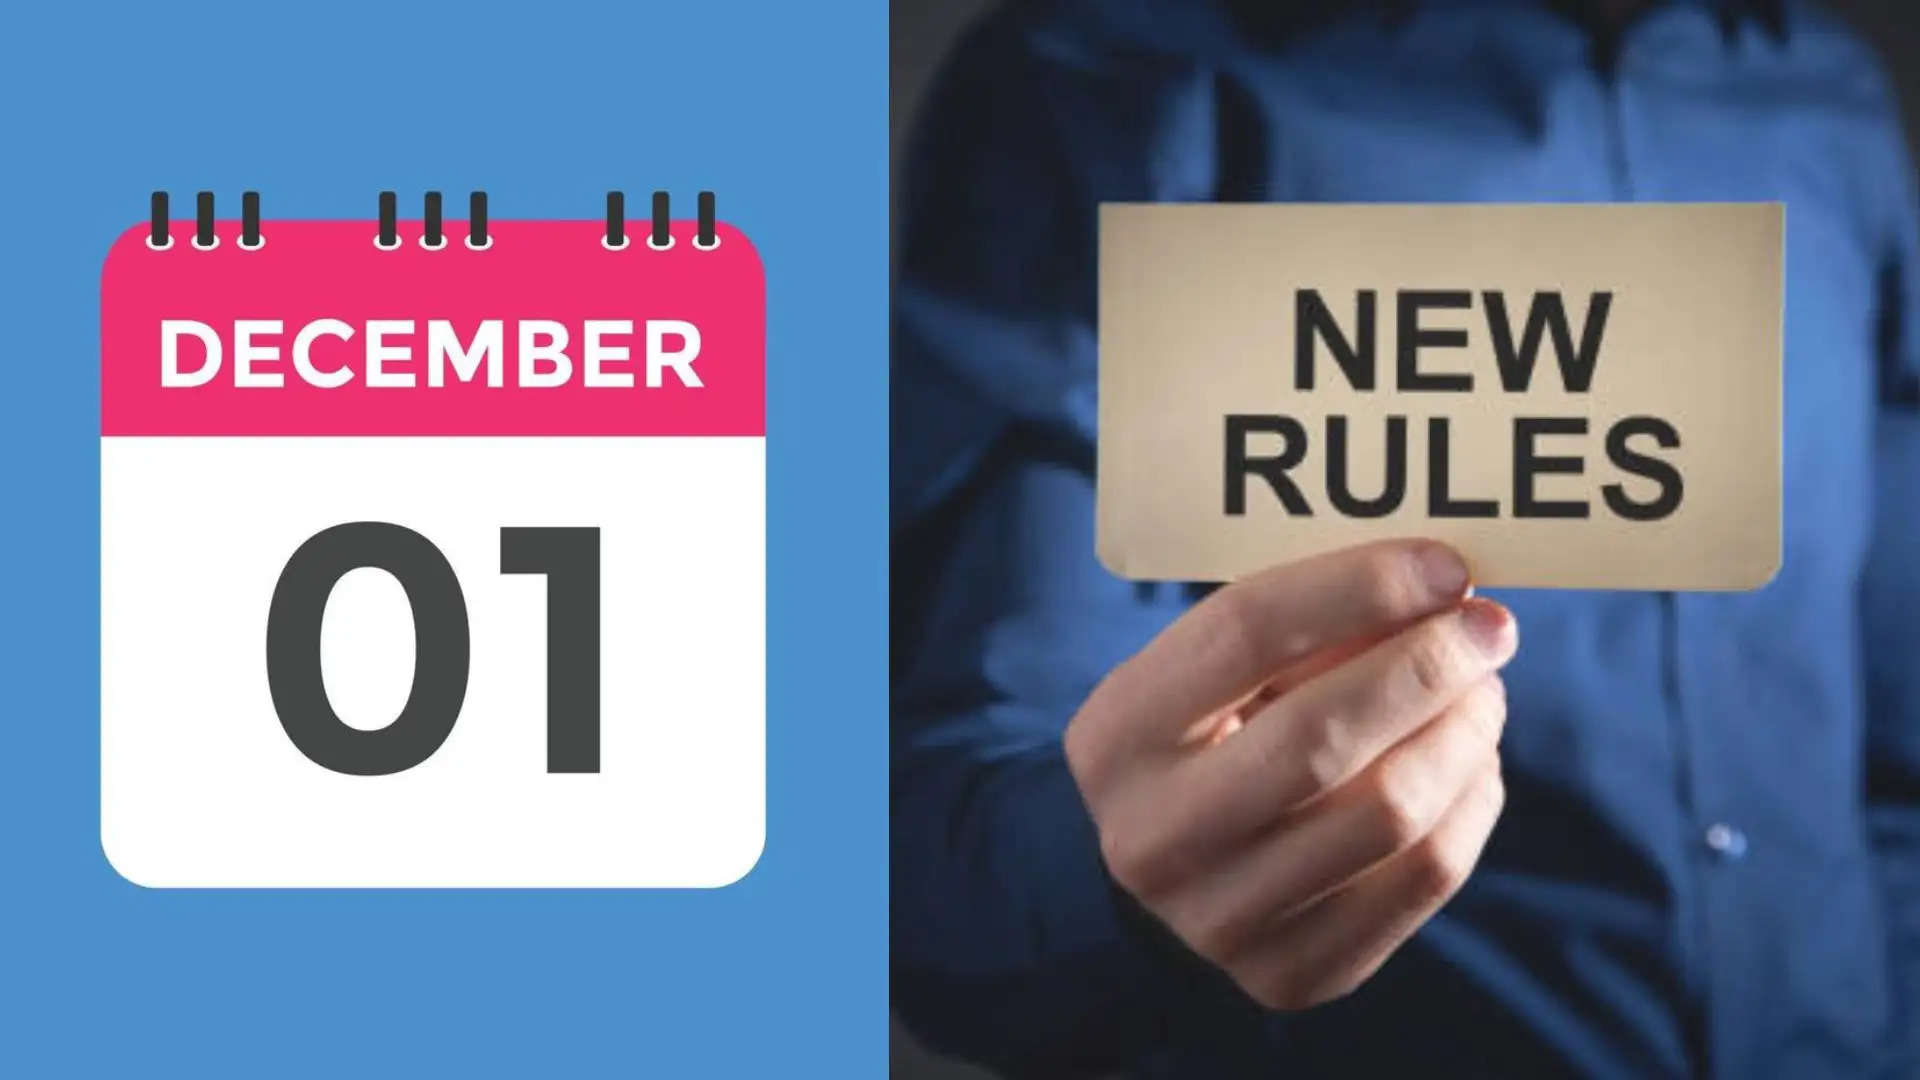 New Rules: दिसंबर महीने में बदल गए नियम